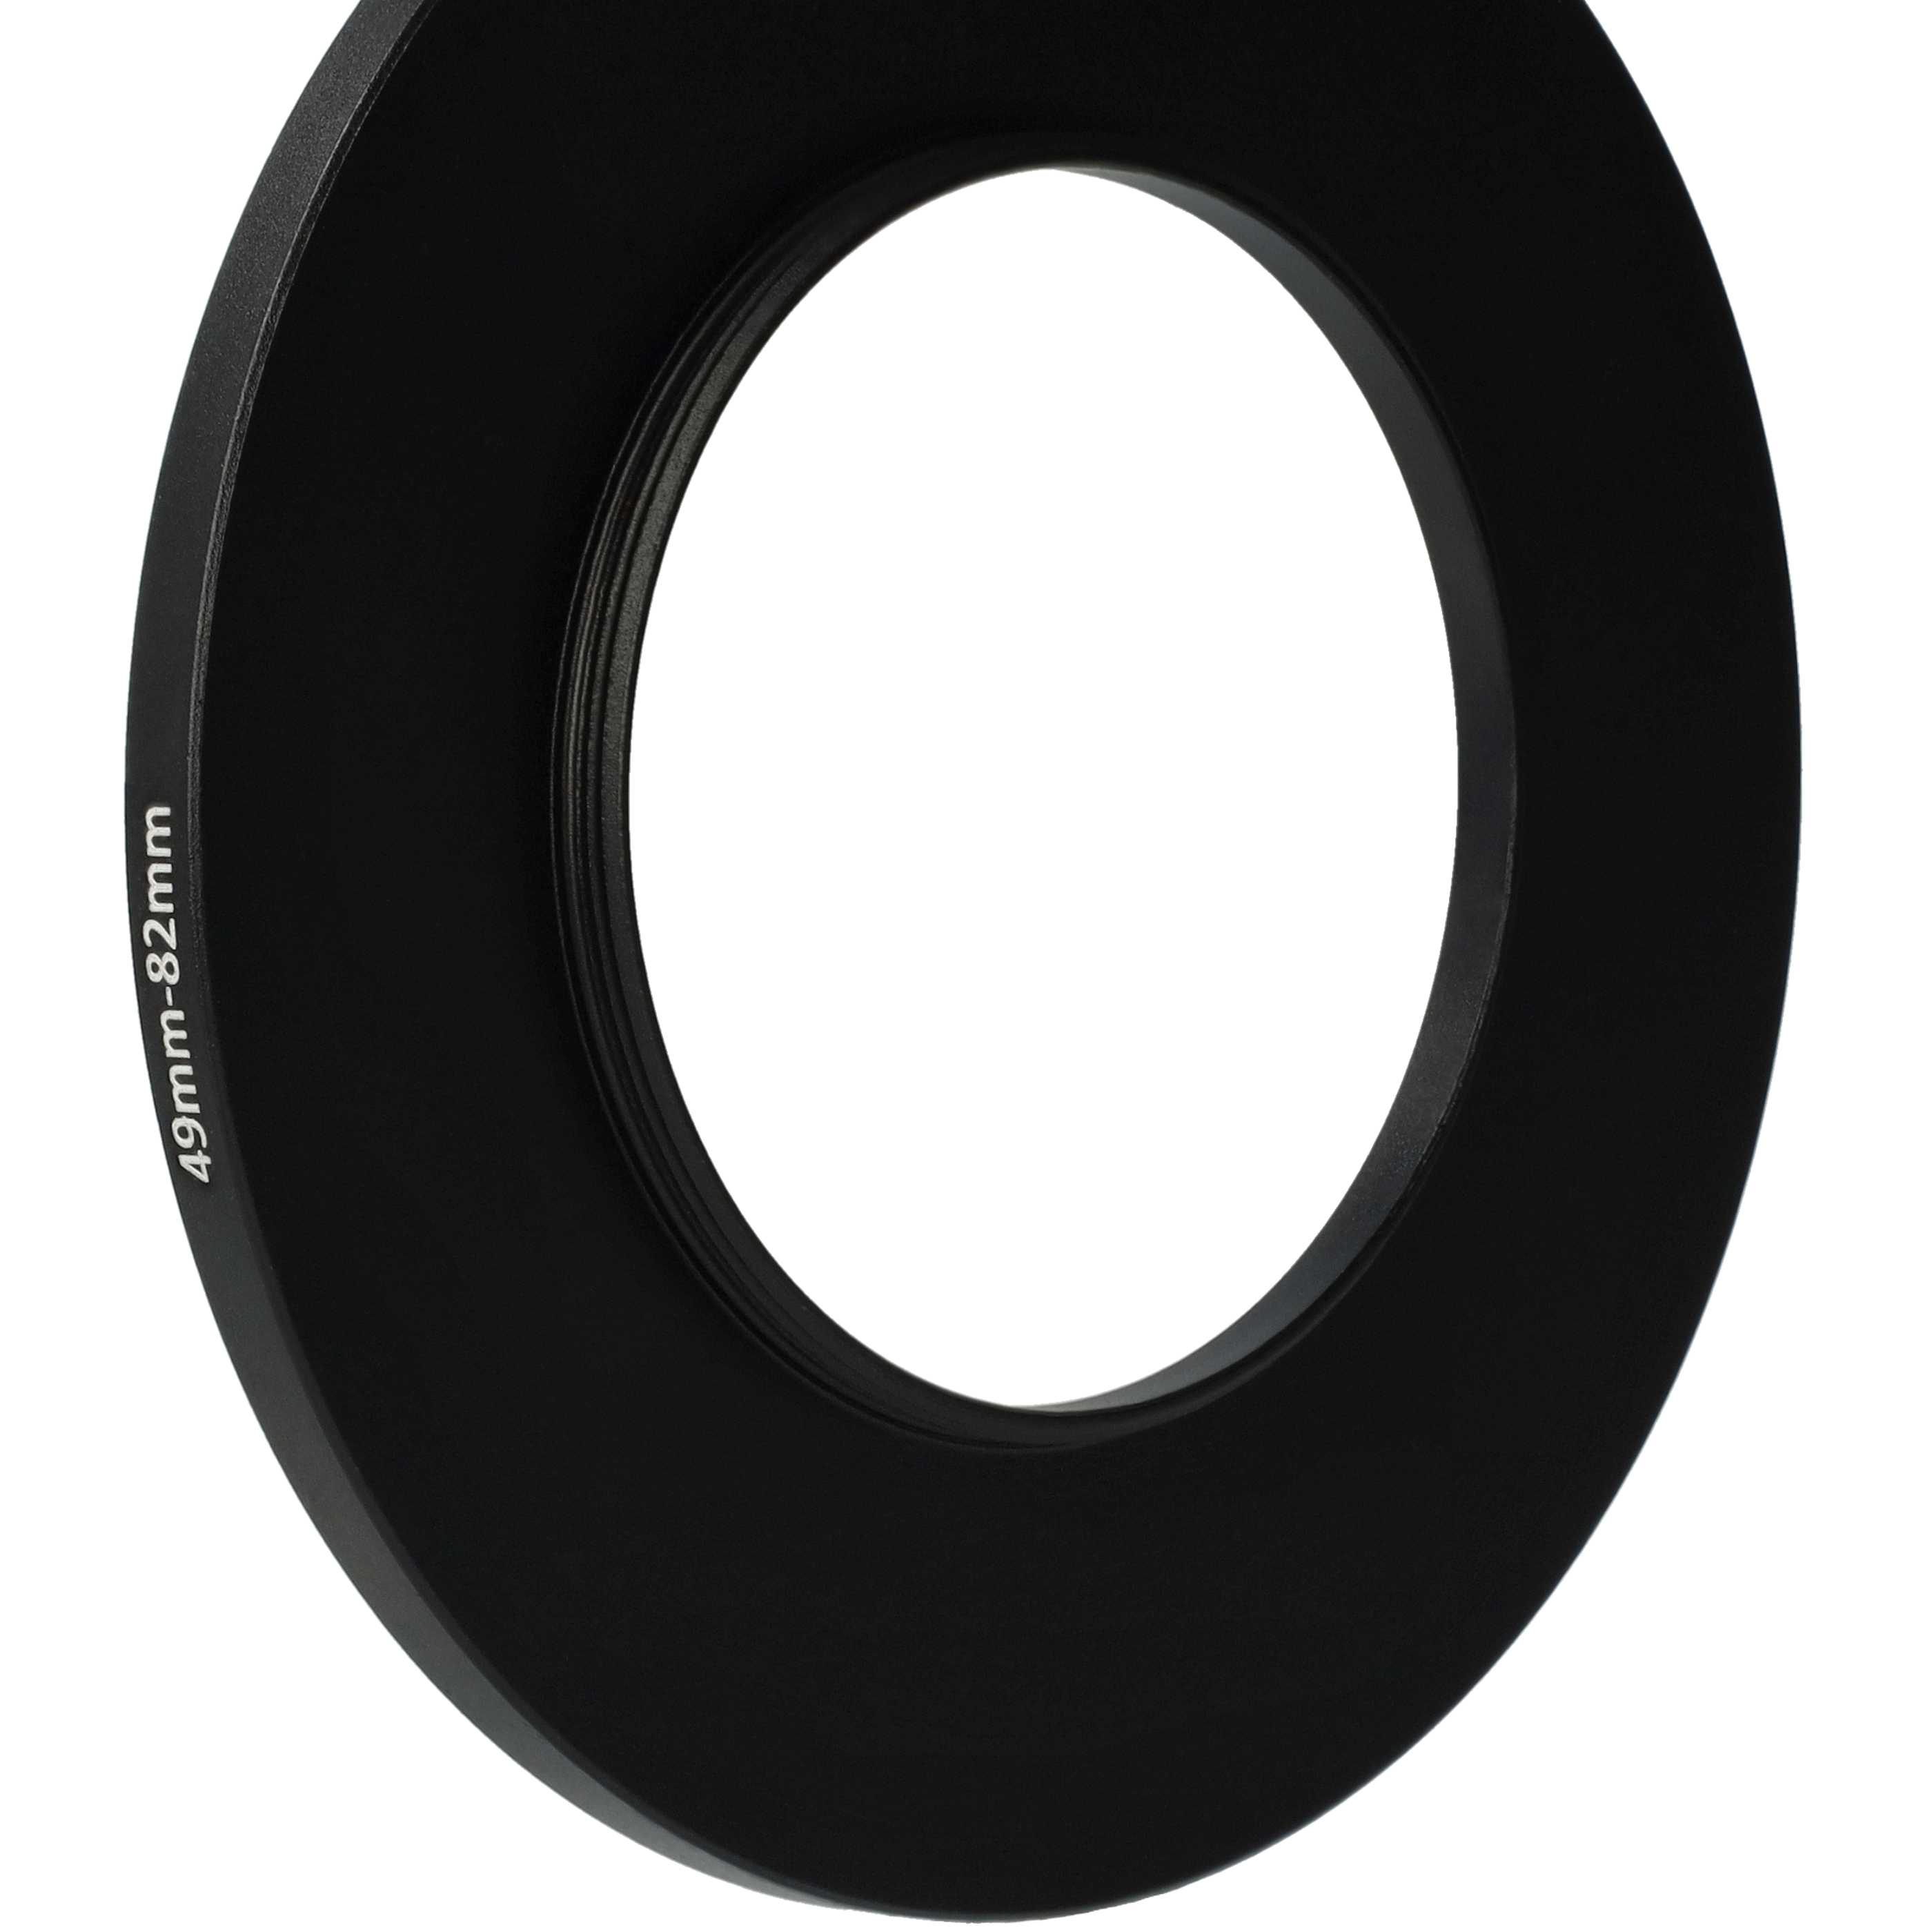 Step-Up-Ring Adapter 49 mm auf 82 mm passend für diverse Kamera-Objektive - Filteradapter